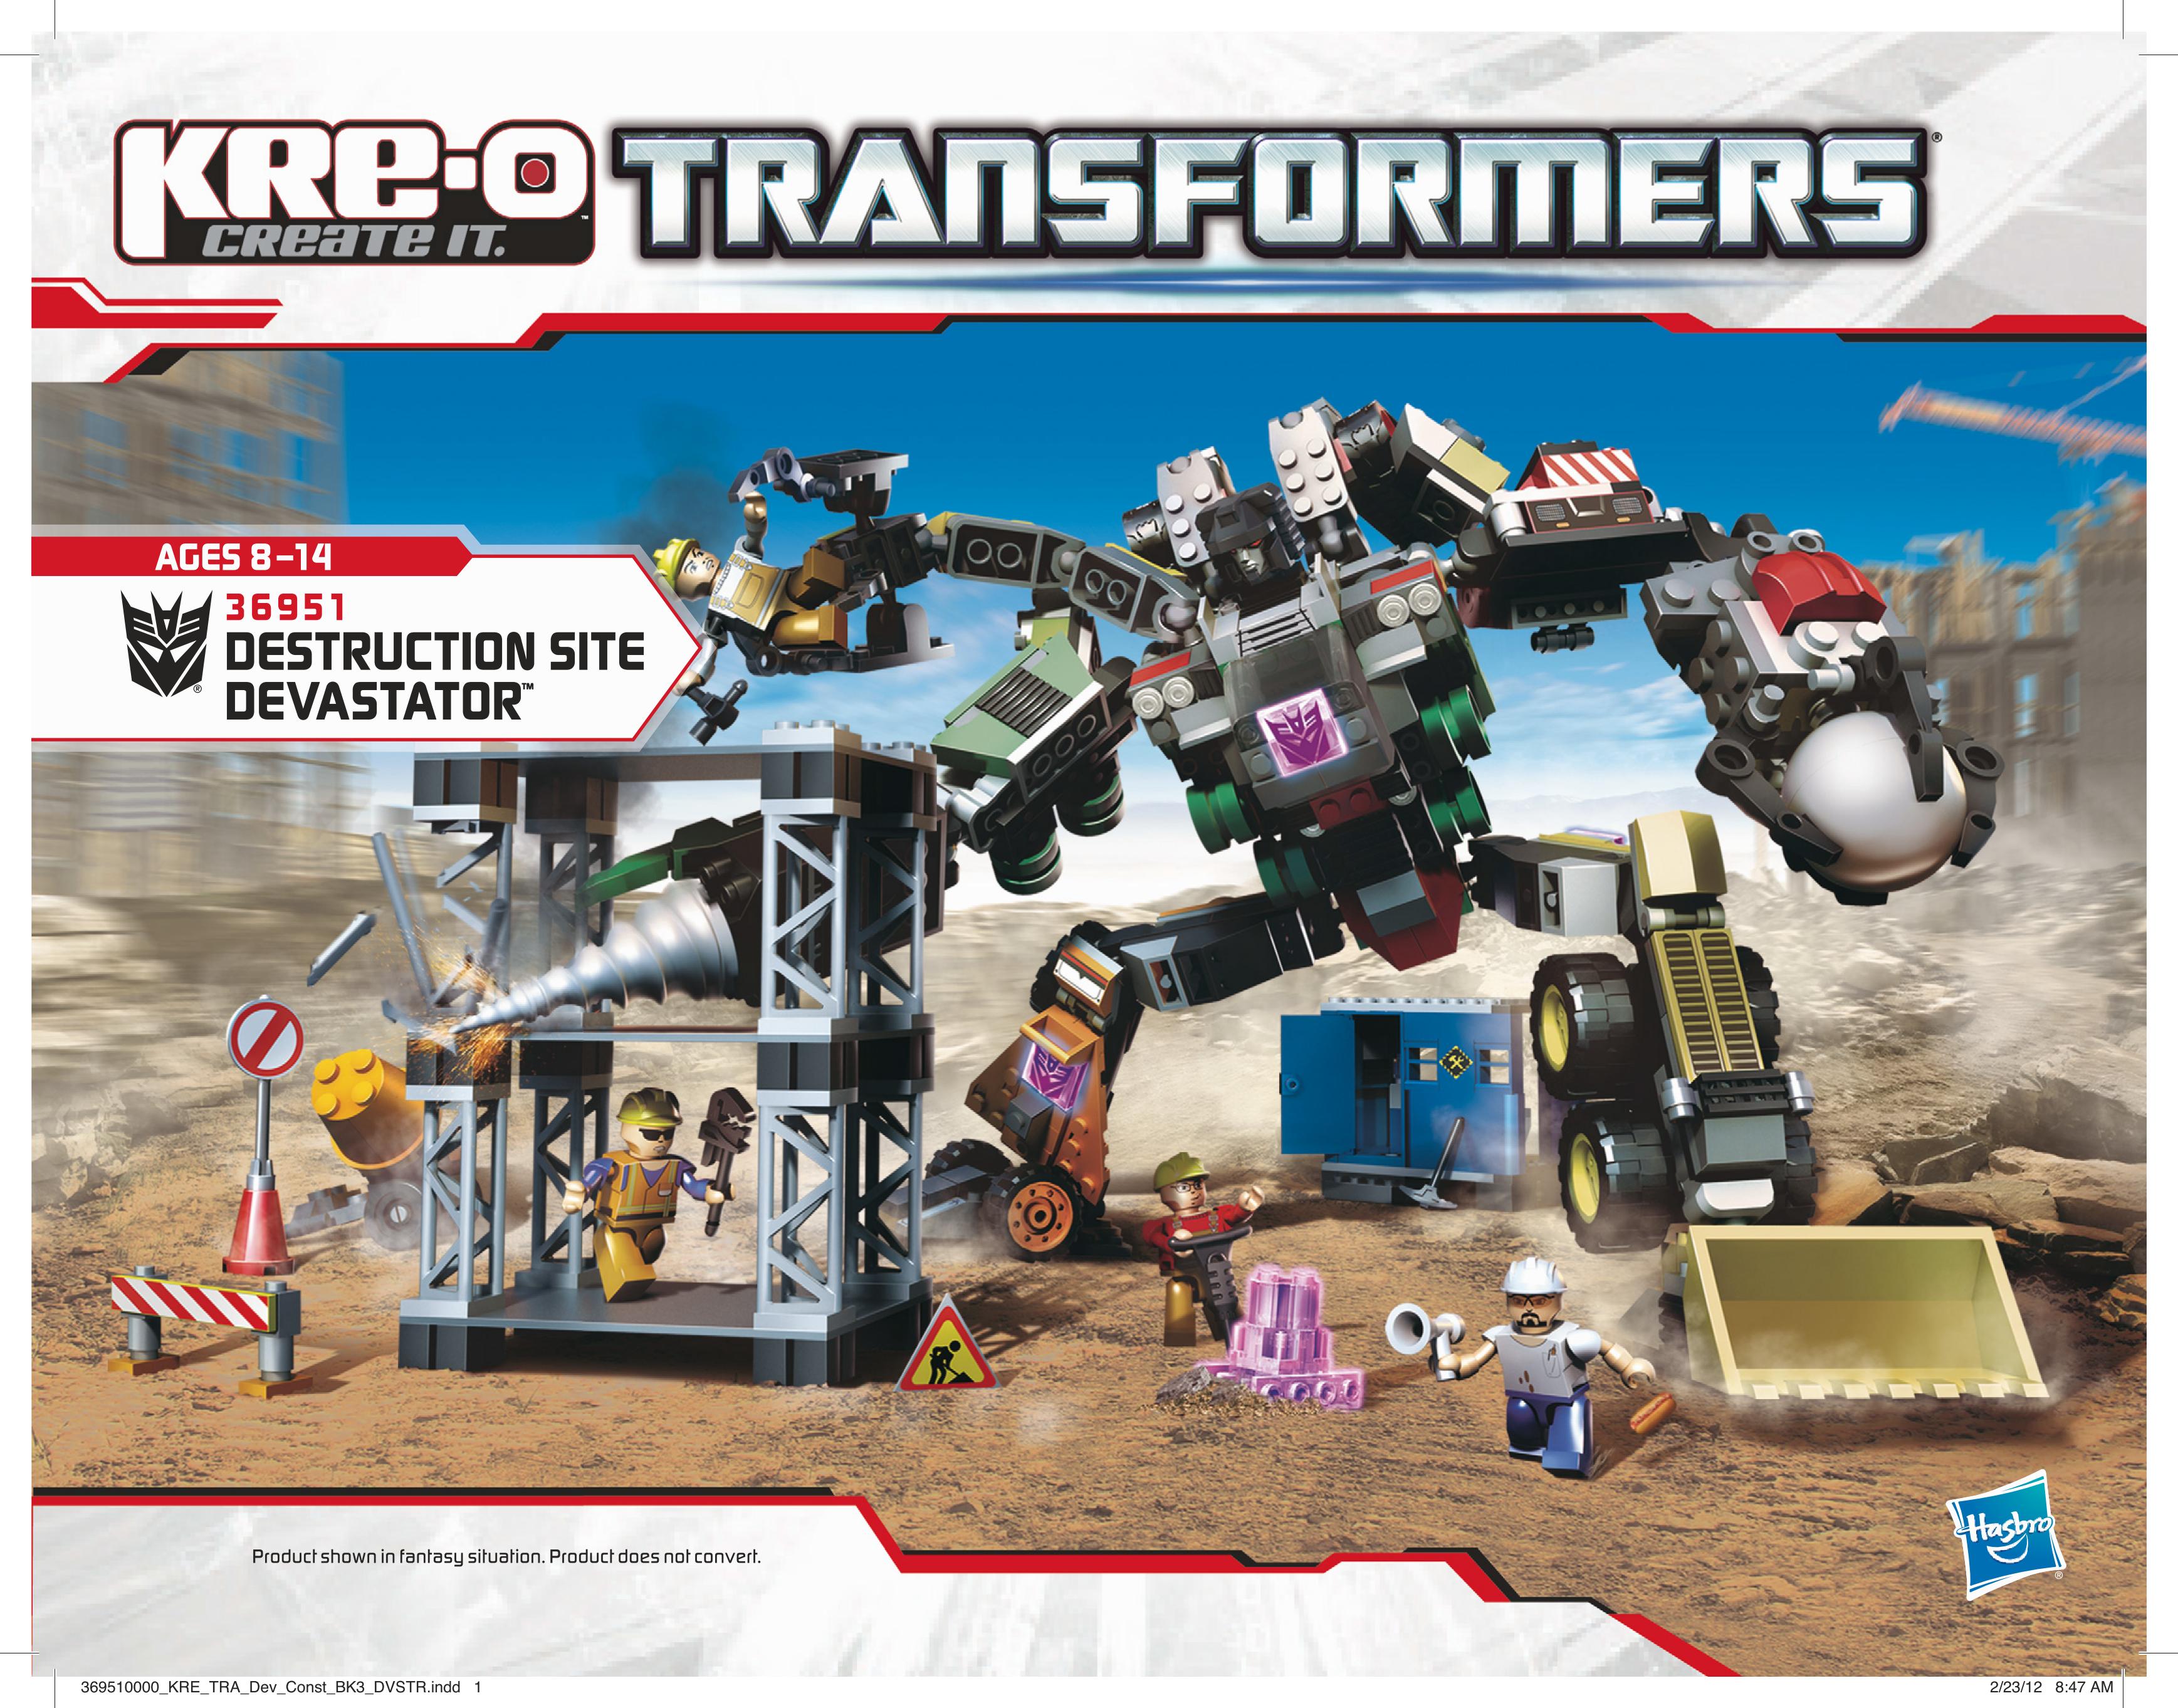 KRE-O Transformers Destruction Site Devastator Set (36951) 